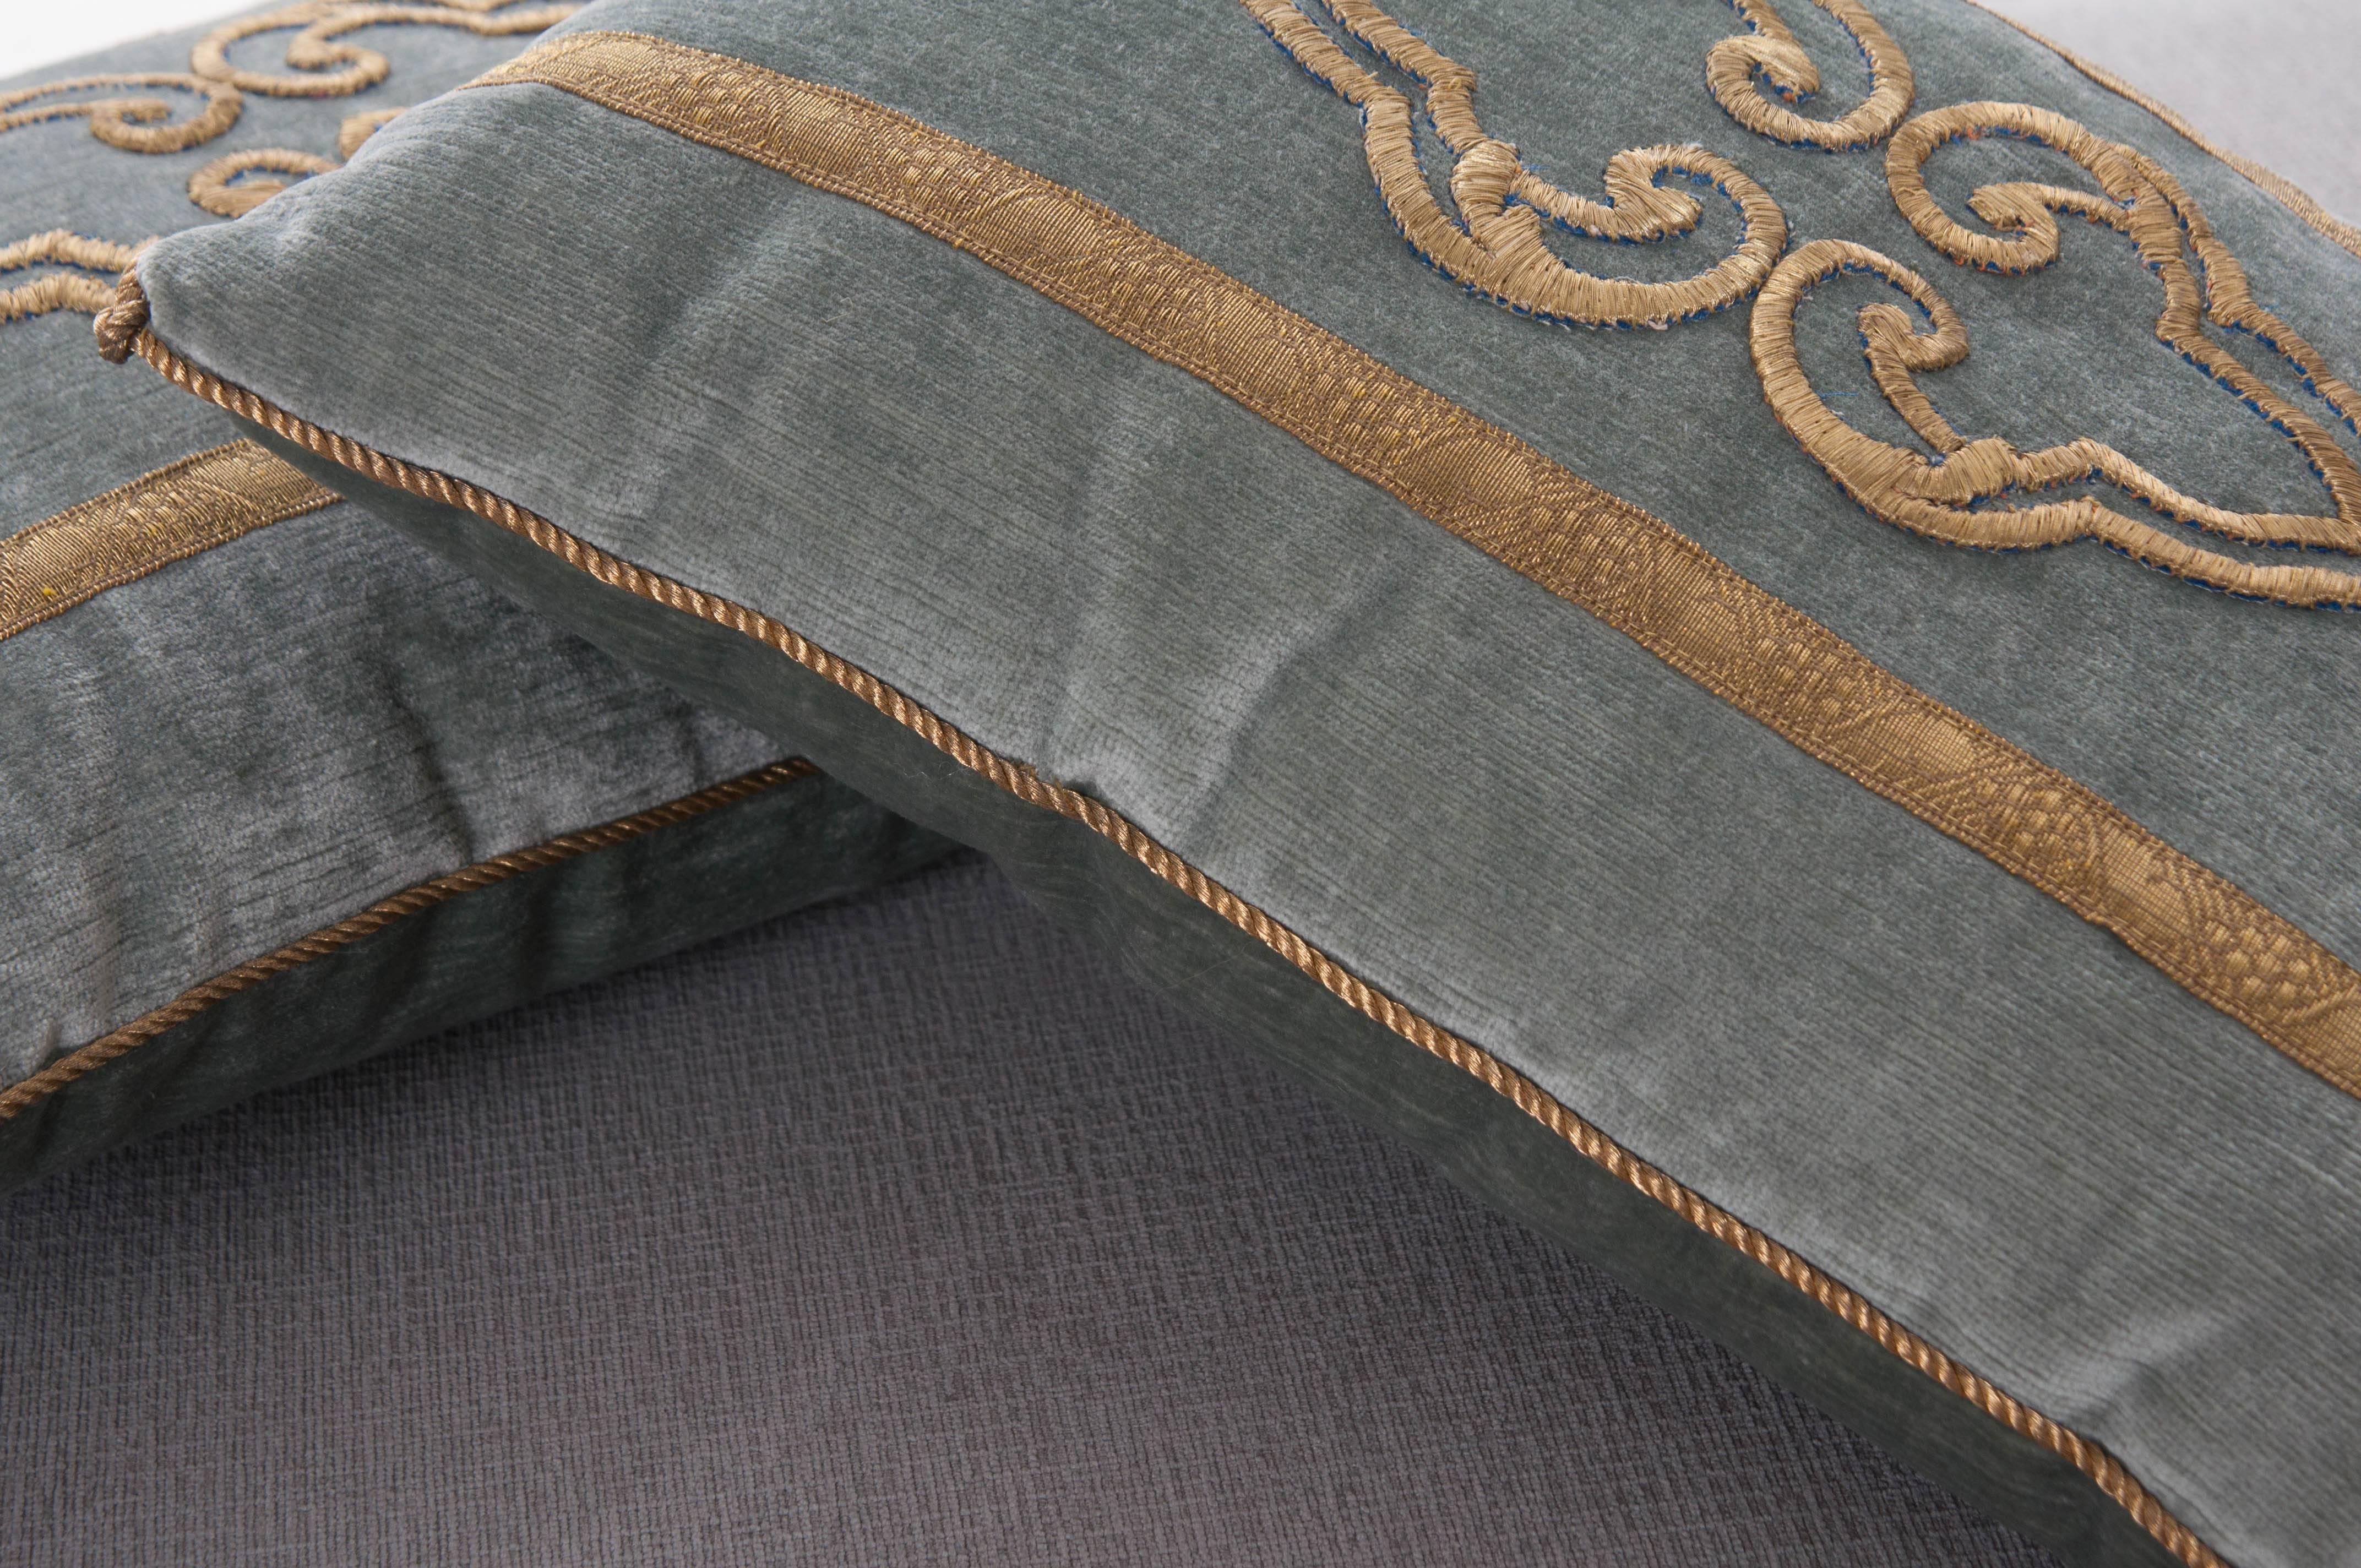 Antique Textile Pillows by B.Viz Designs 1